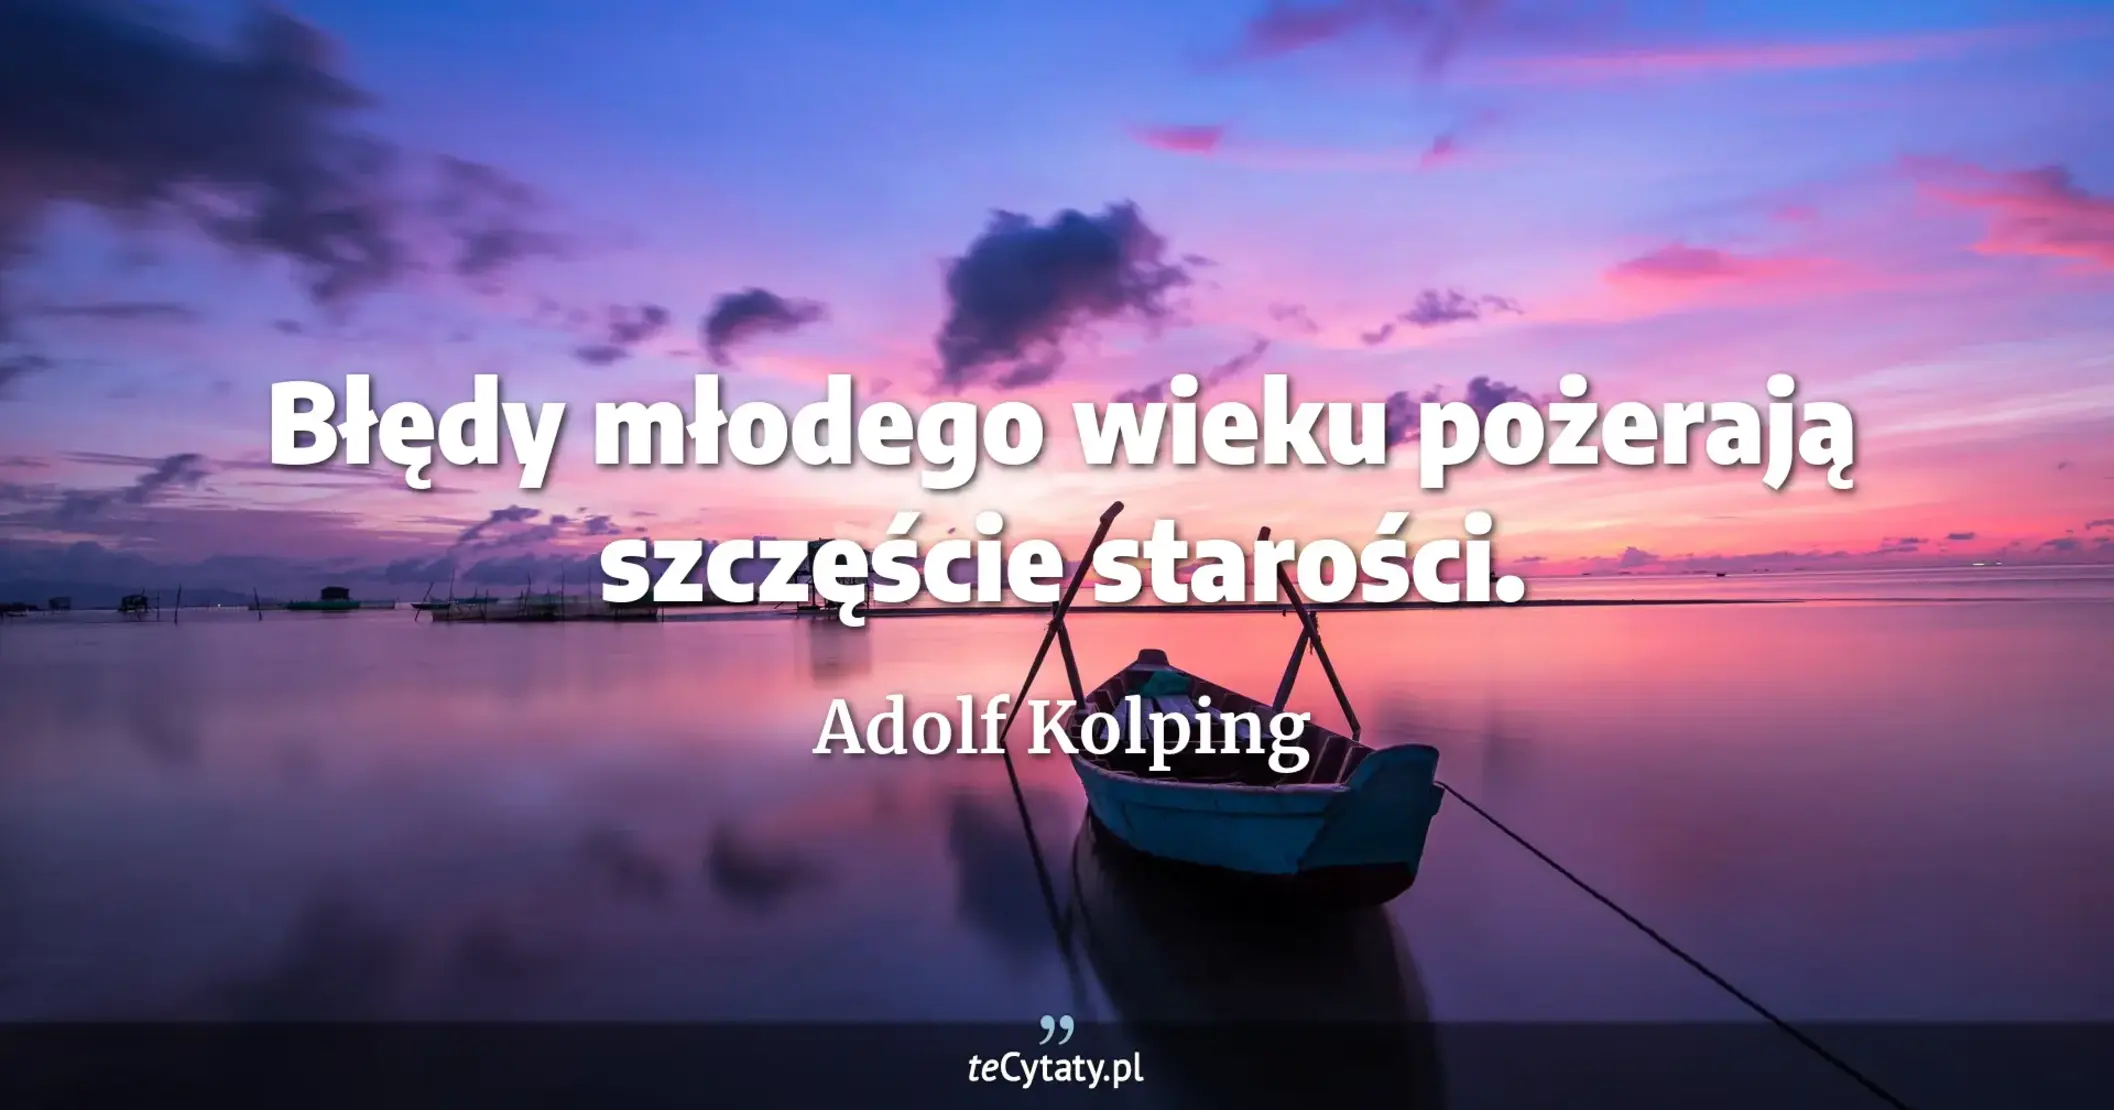 Błędy młodego wieku pożerają szczęście starości. - Adolf Kolping